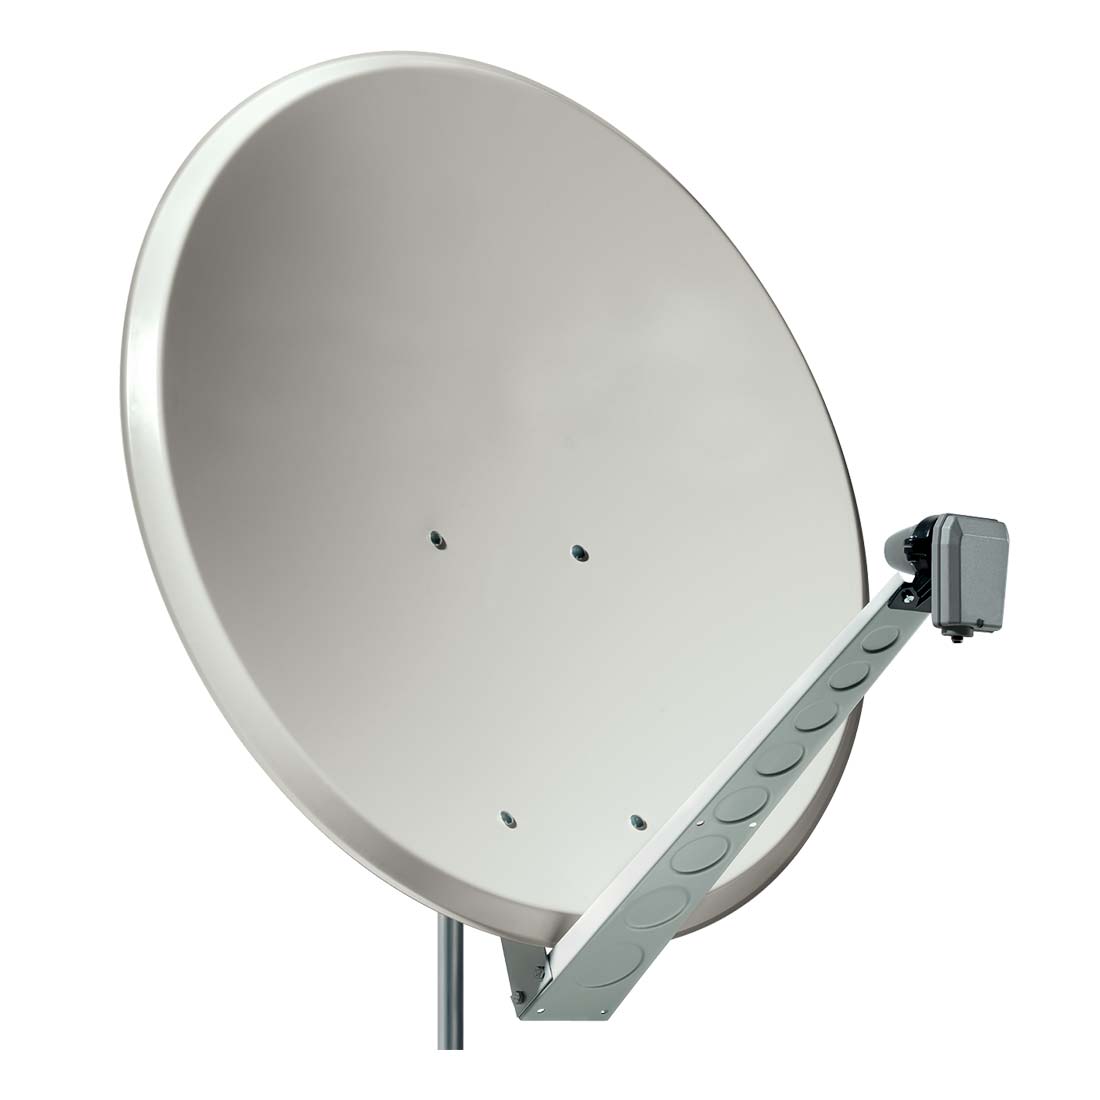 Тарелка для интернета купить. Lumax спутниковая антенна. Параболическая антенна Eurostar. Параболическая антенна для телевизора. Антенны спутниковые тарелки.